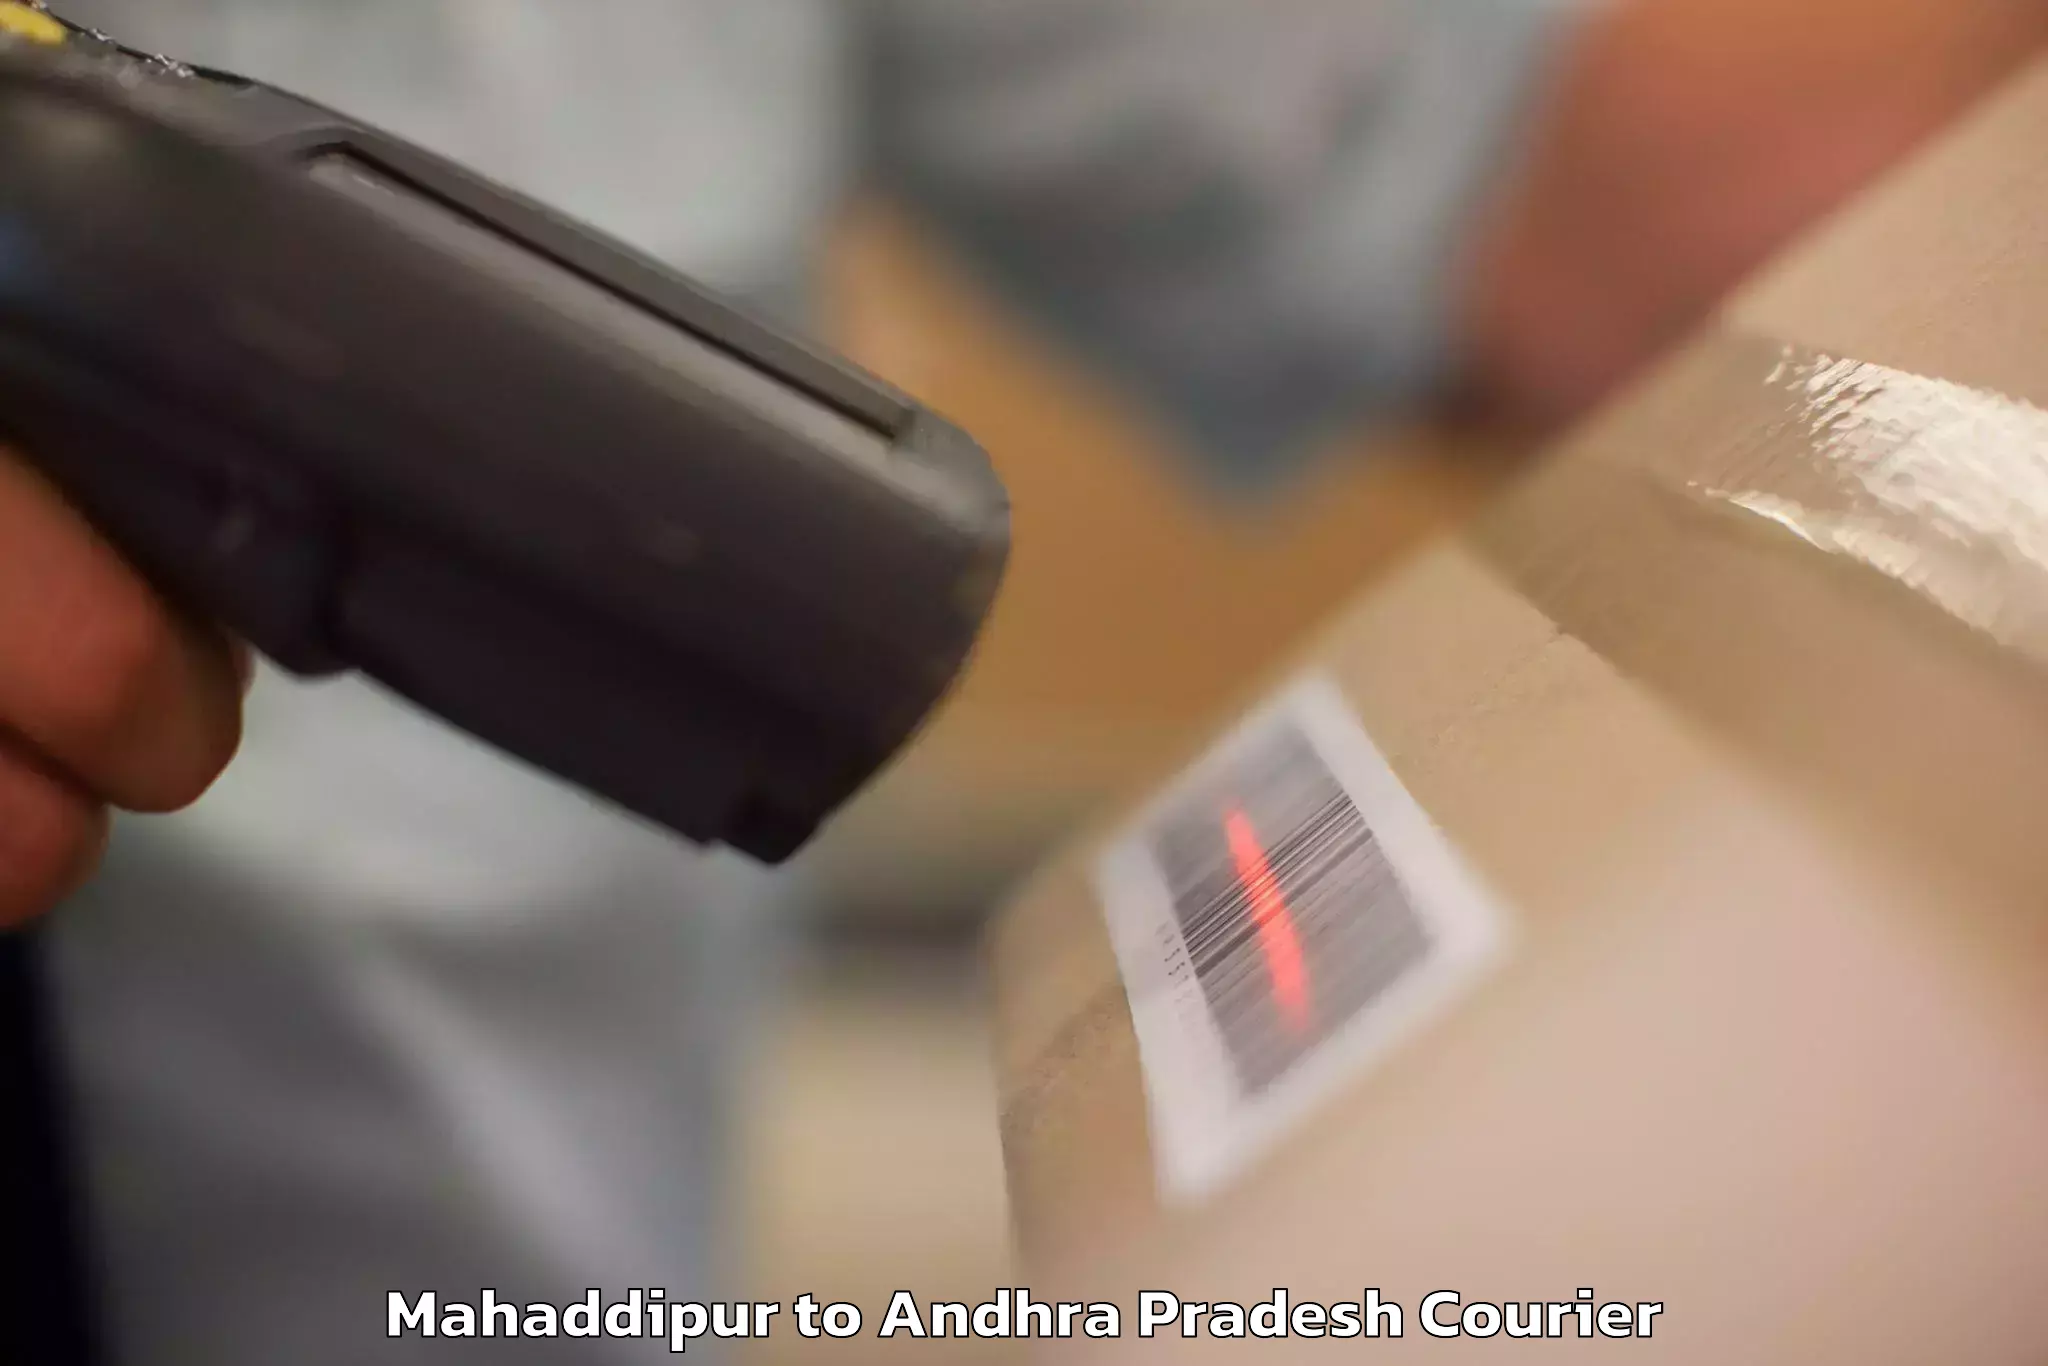 High-quality baggage shipment Mahaddipur to Tada Tirupati